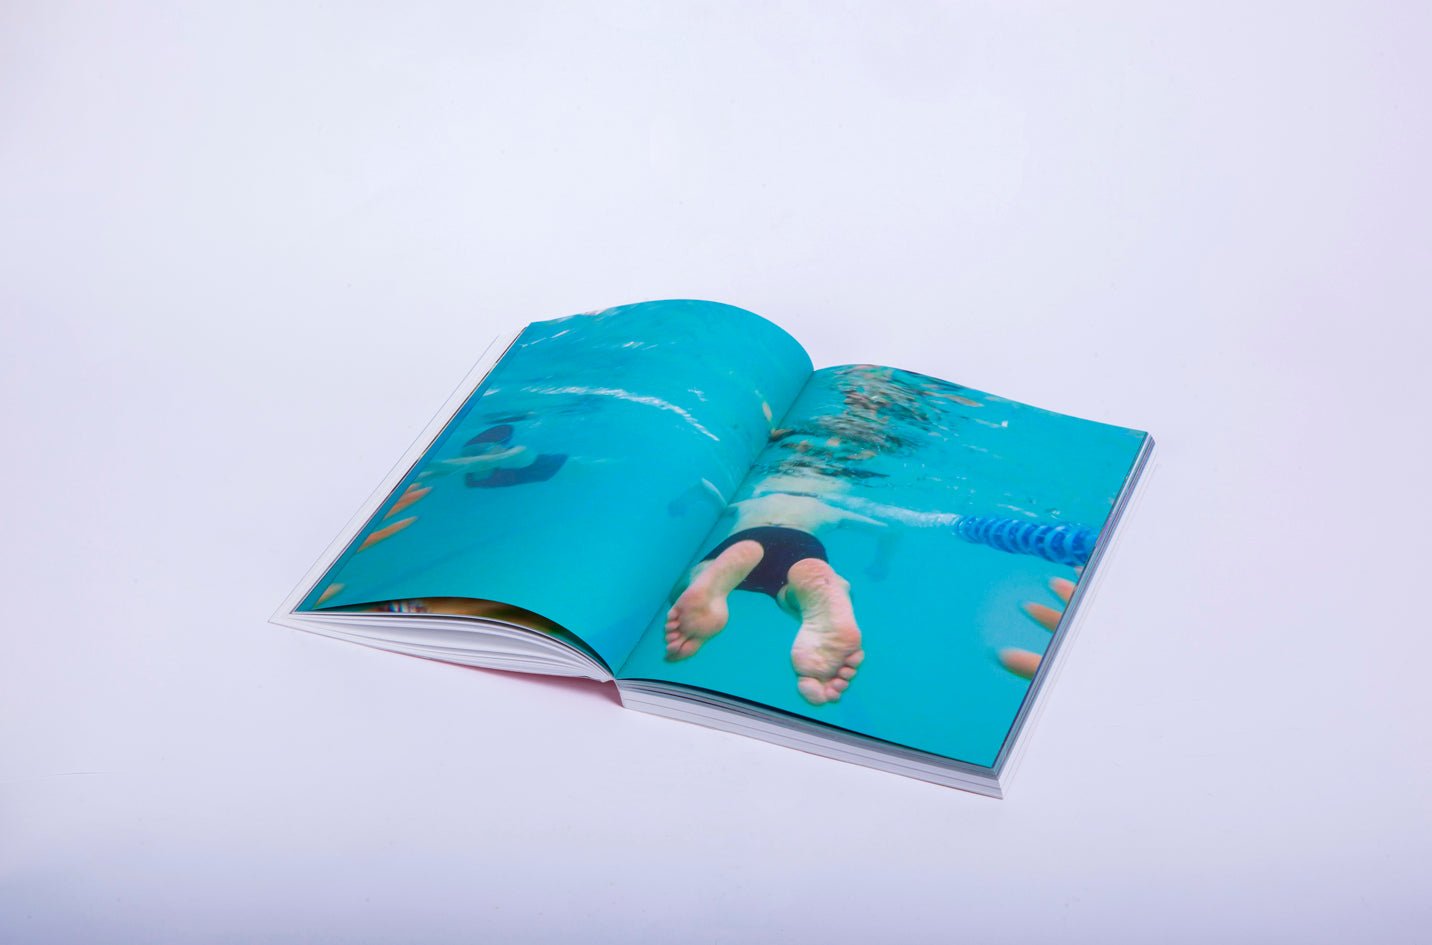 A Swimming Pool - Michele Tagliaferri